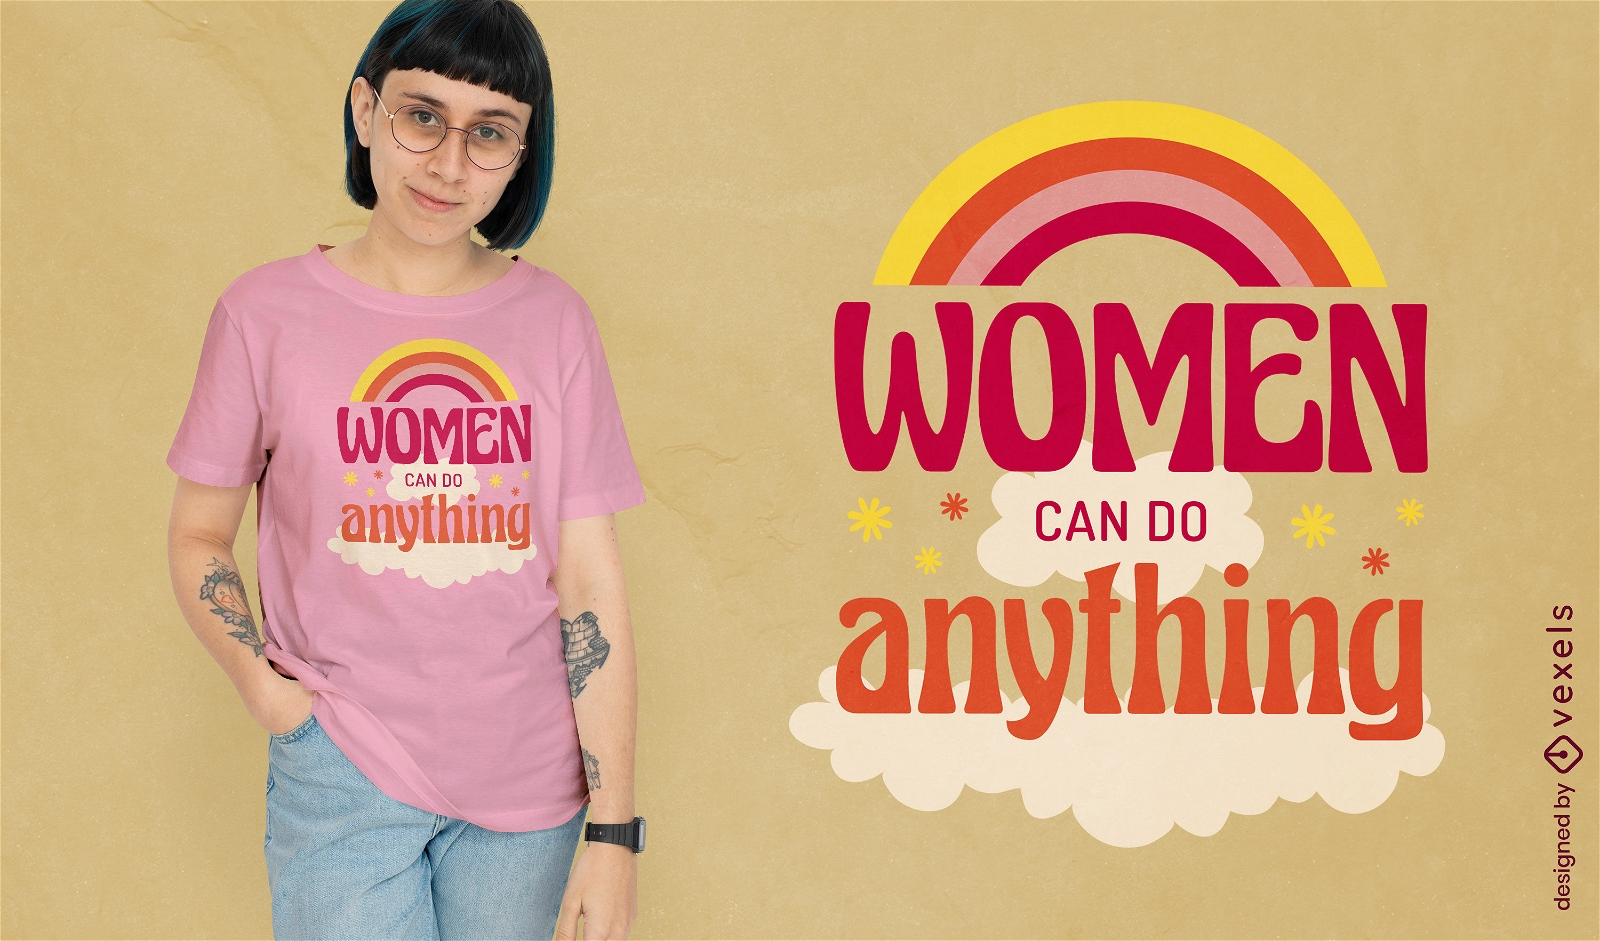 Las mujeres pueden hacer cualquier cosa dise?o de camiseta de cita feminista